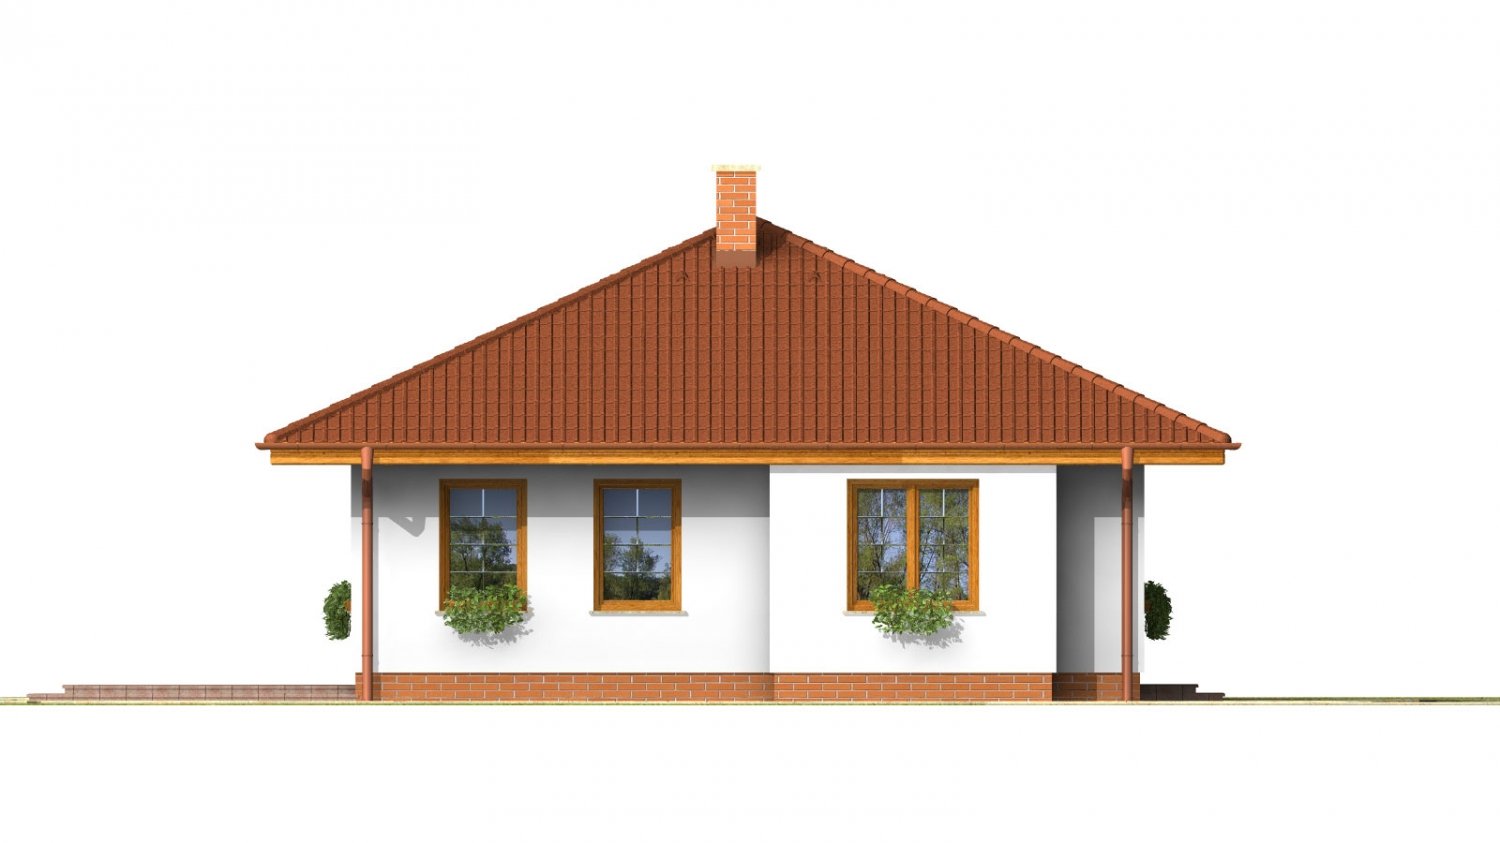 Zrkadlový pohľad 2. - Pěkný přízemní dům s valbovou střechou a oddělenou denní a noční částí. Kuchyň s obývacím pokojem tvoří velkoprostor.